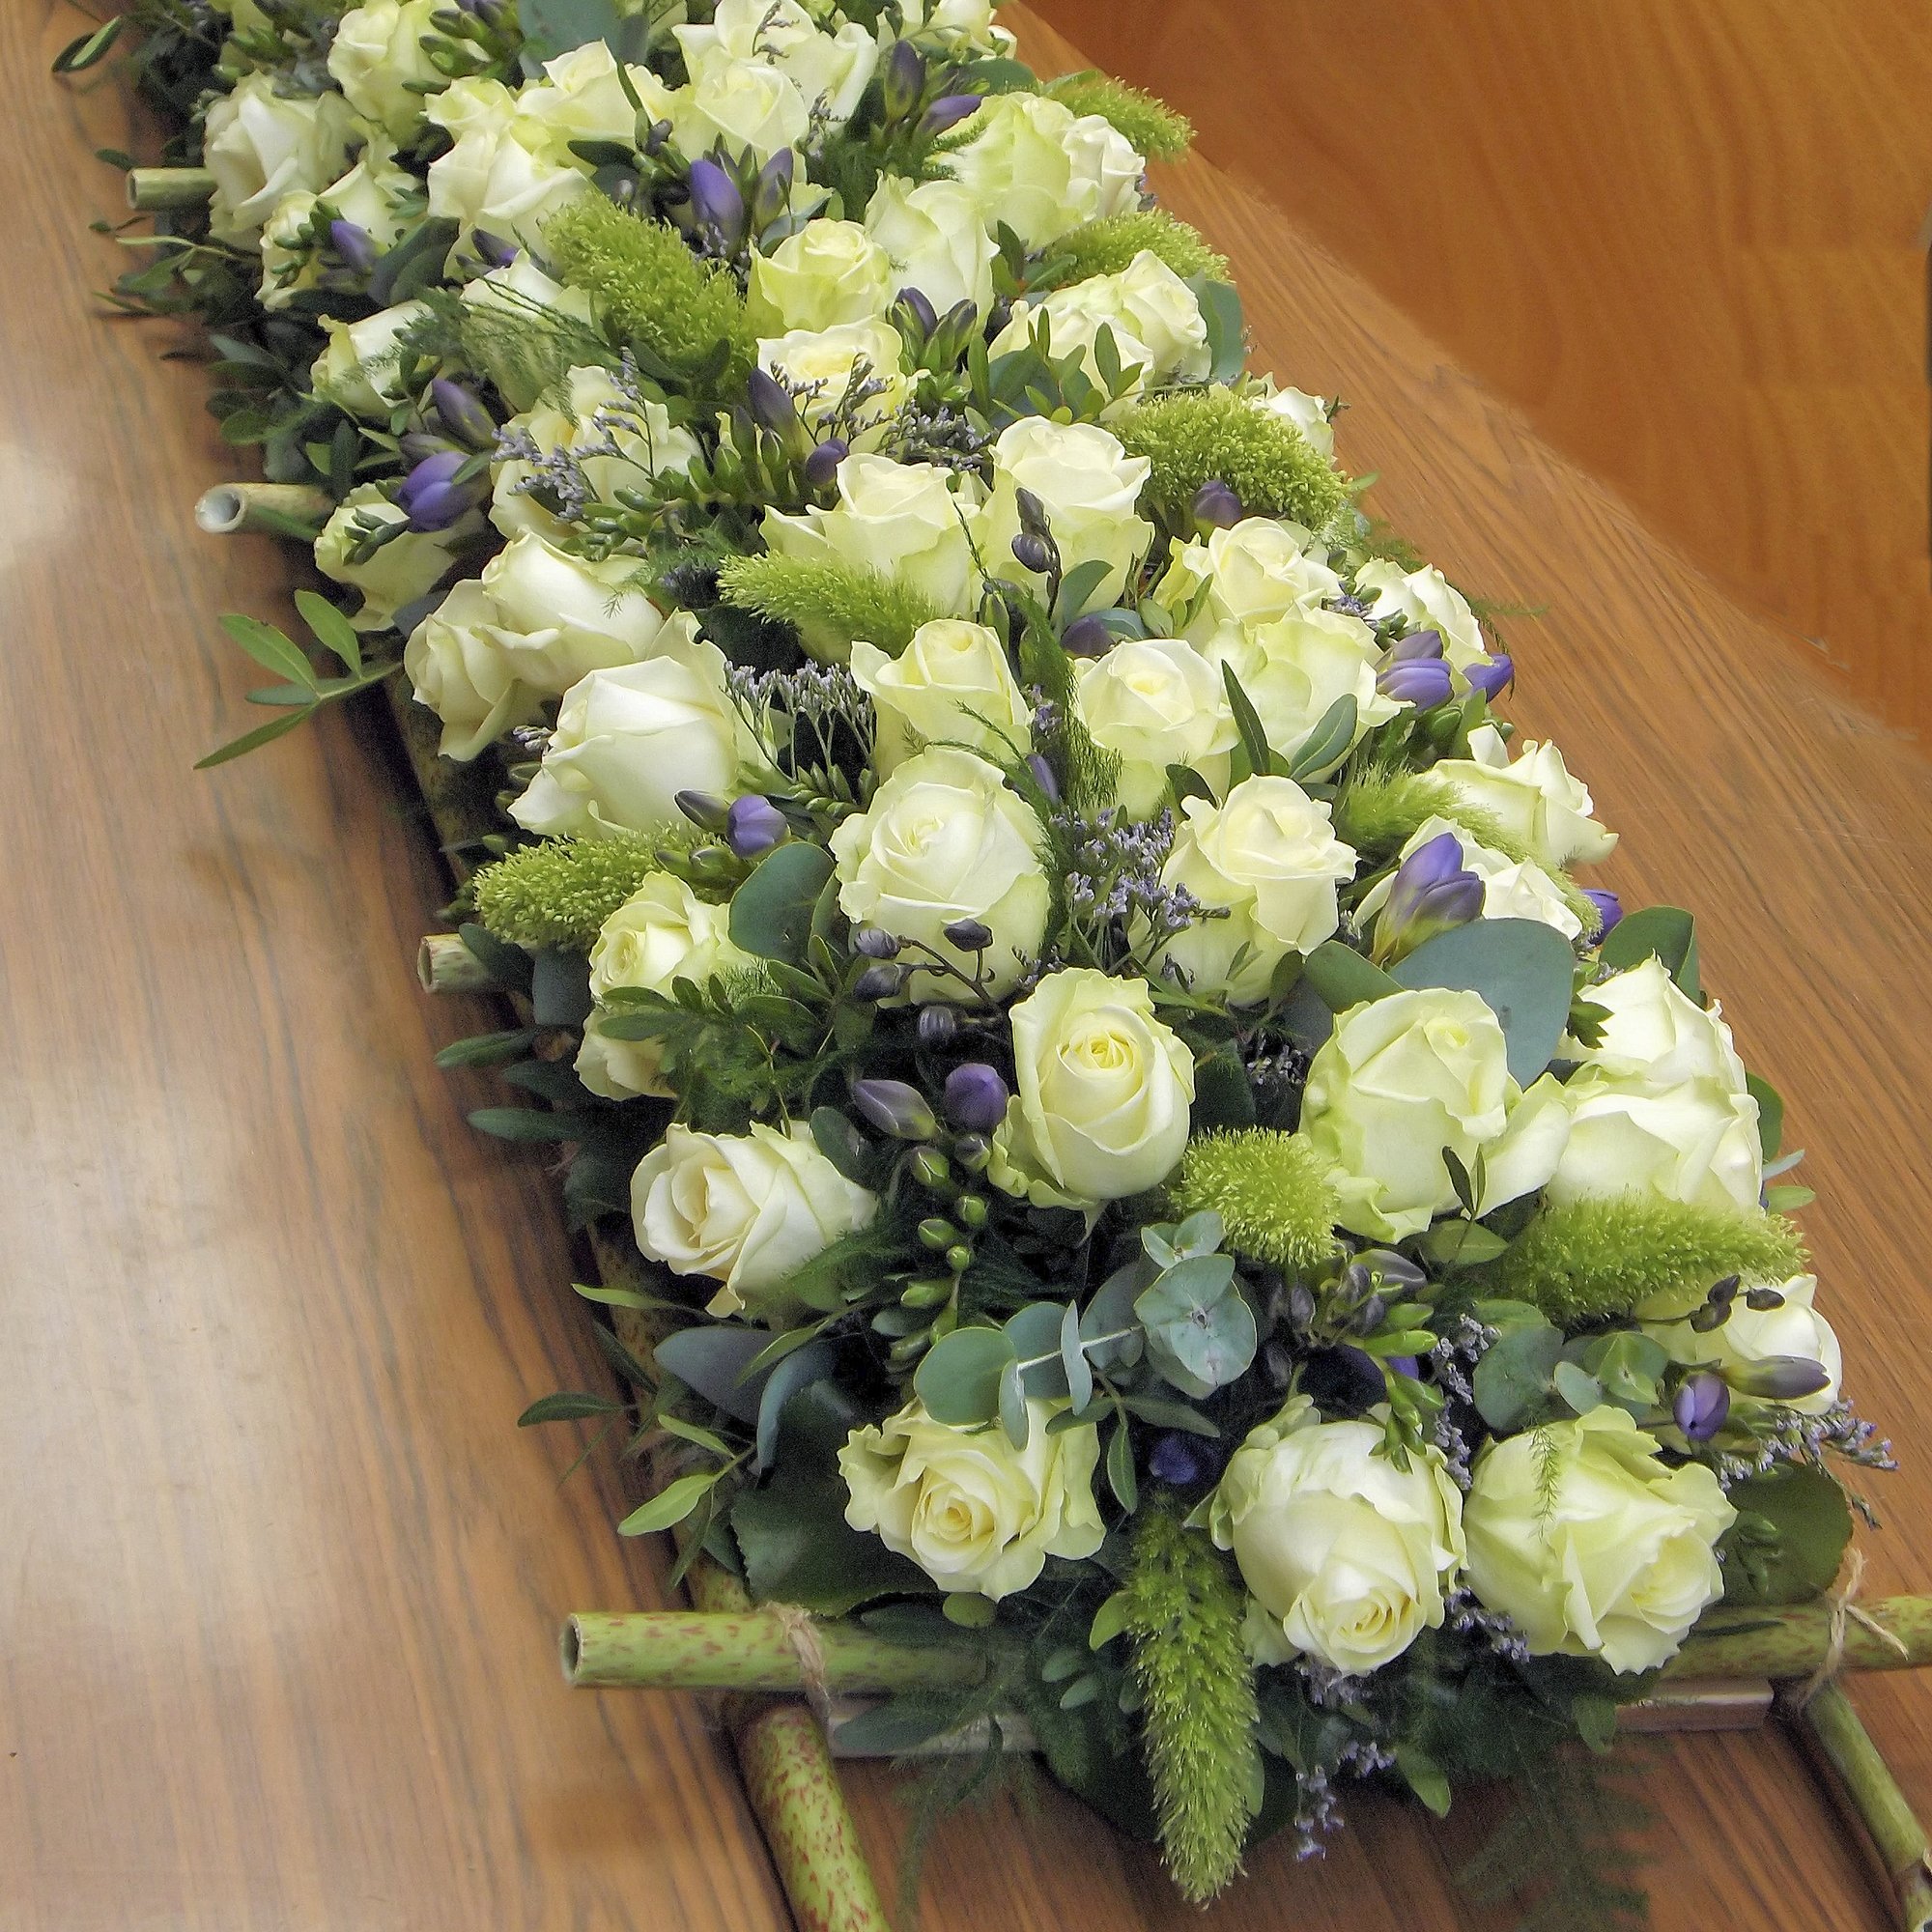 De Kracht van Bloemen- rouwboeket zakelijk- luxe afscheidsbloemen  6 (3).jpg